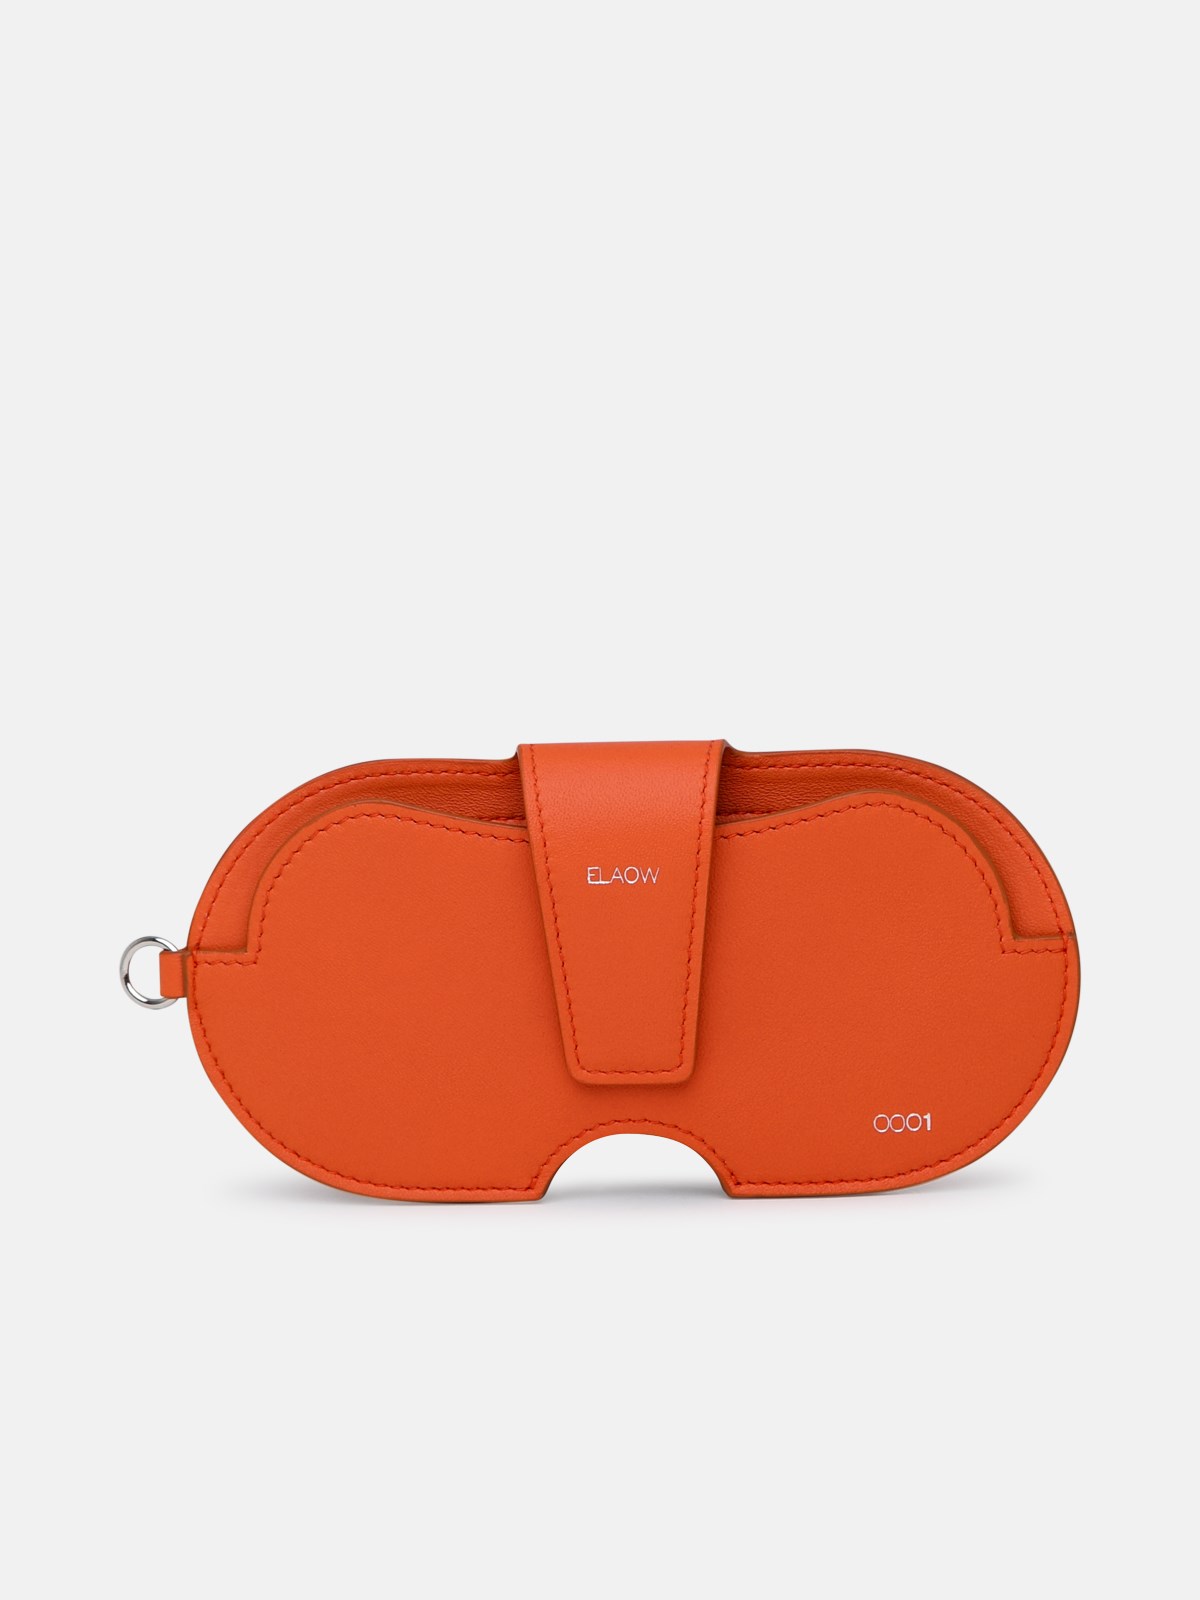 Elaow Orange Leather Glasses Holder